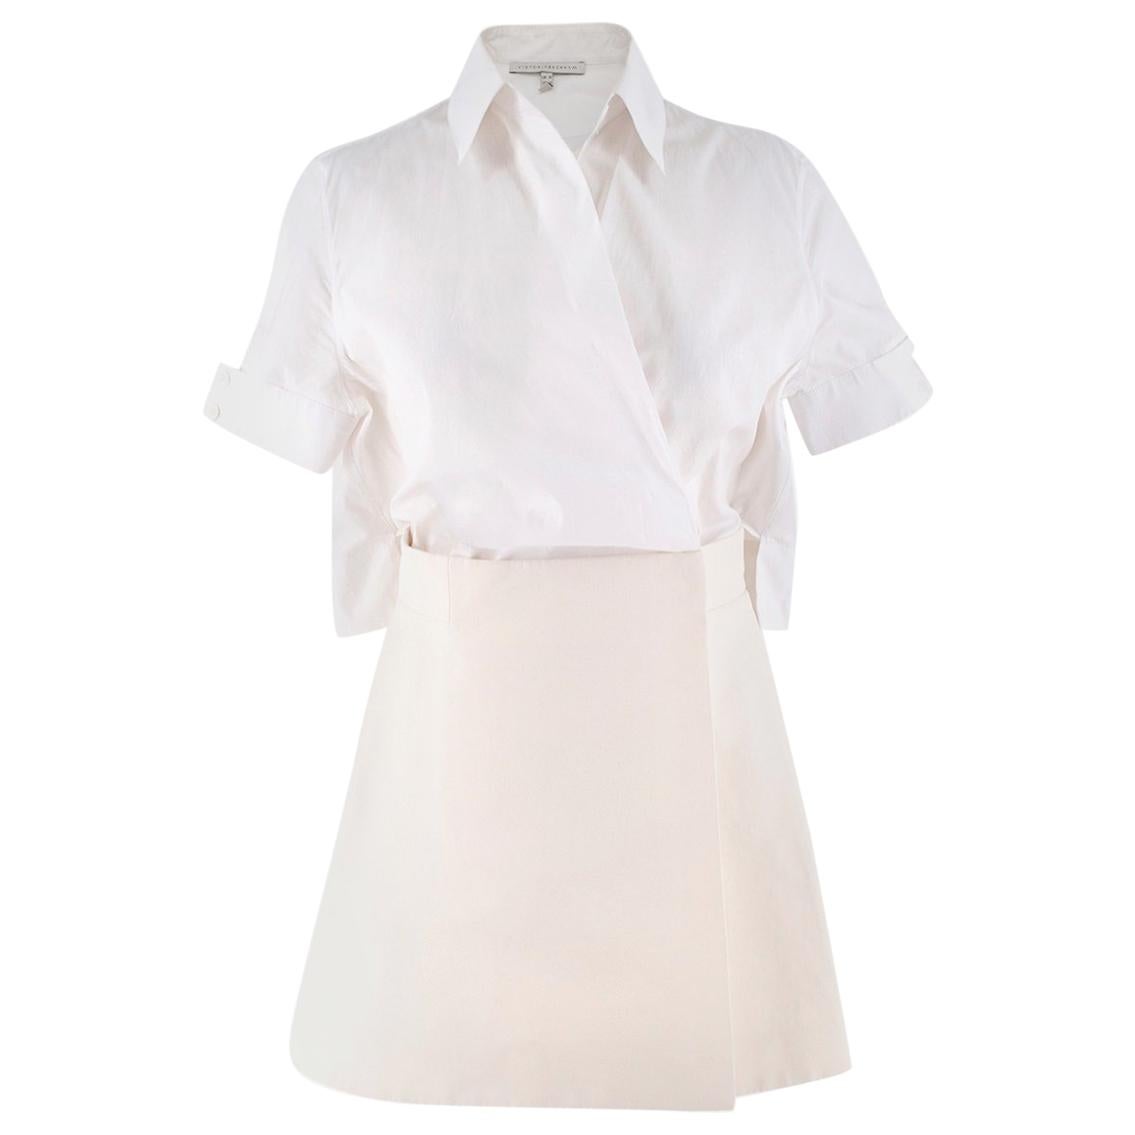 Victoria Beckham Wrap Style Shirt & Skirt Dress UK 10